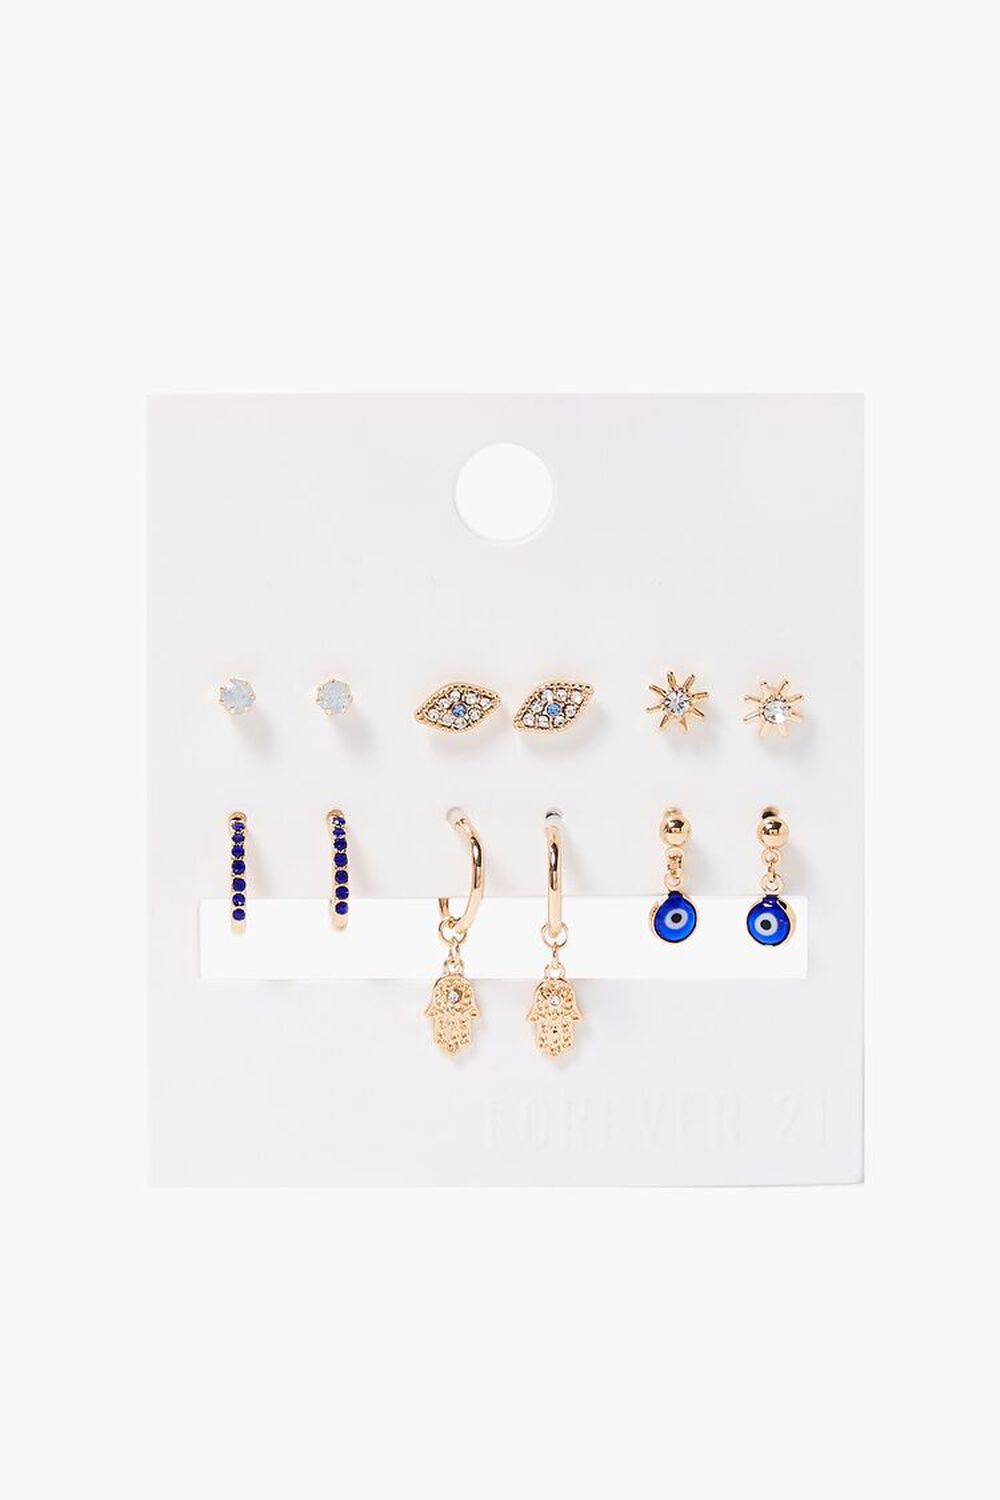 GOLD/BLUE Evil Eye Assorted Earrings Set, image 1